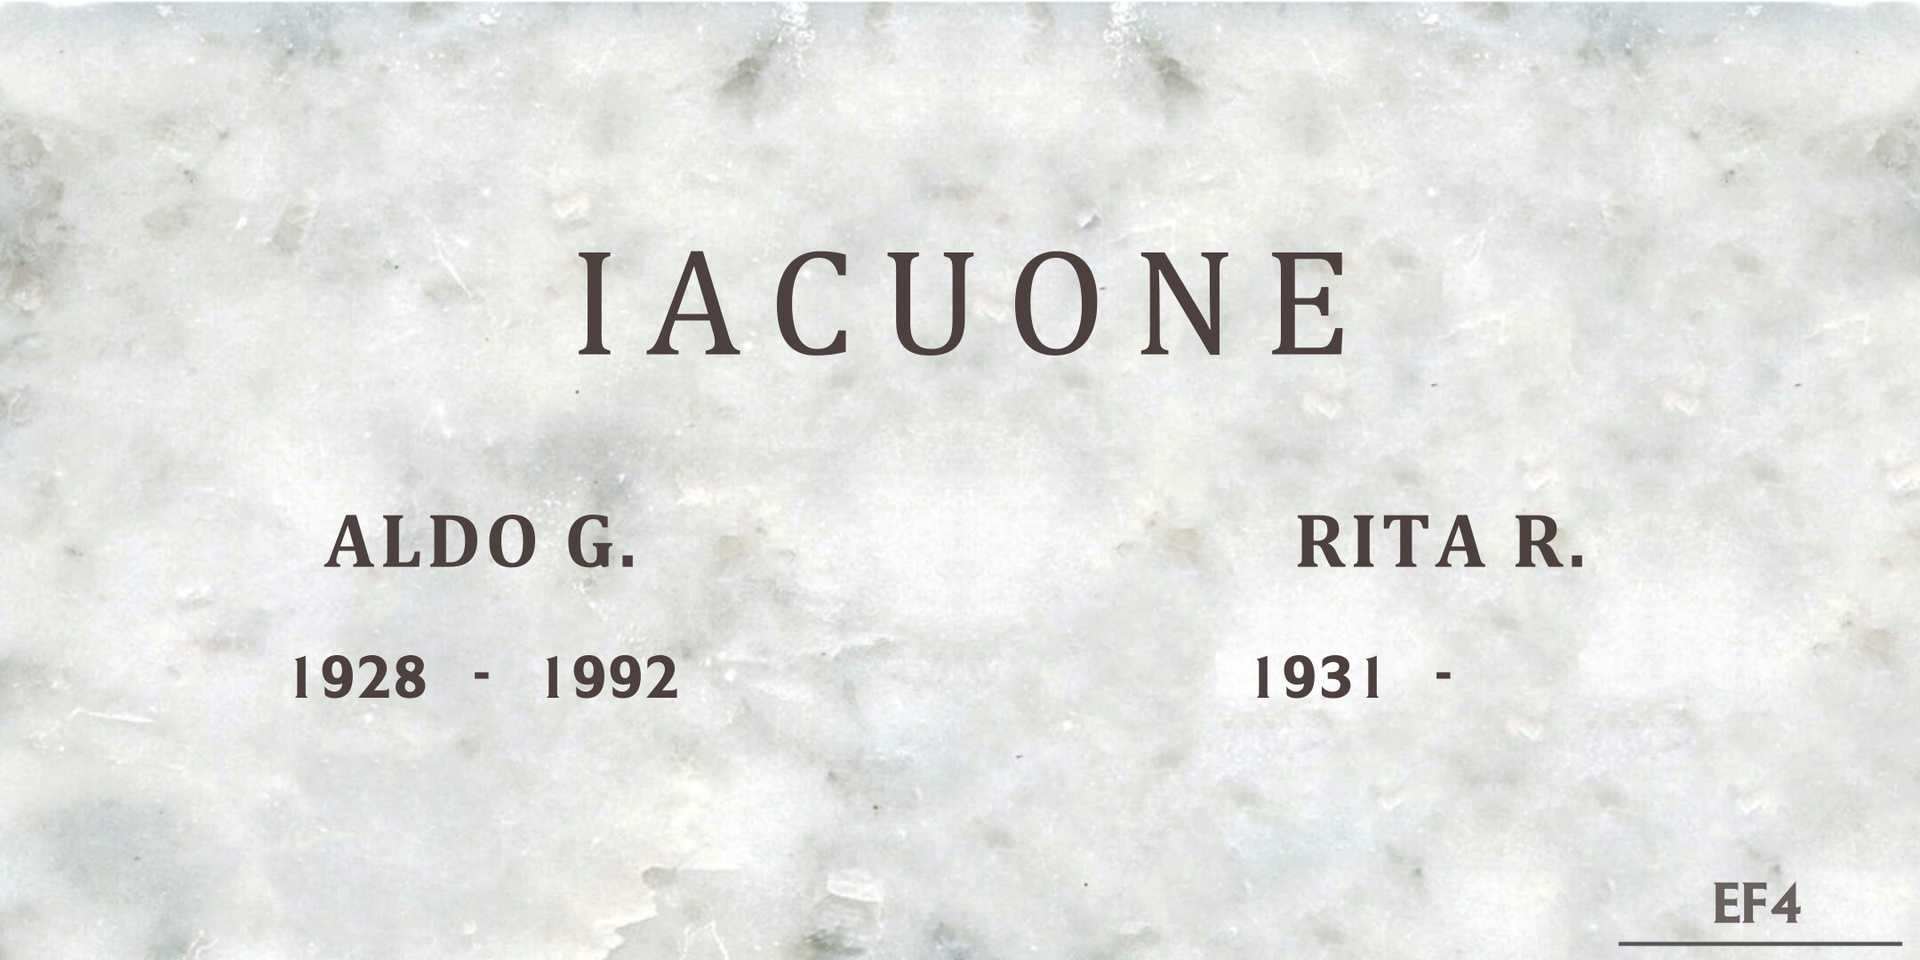 Aldo G. Iacuone's grave